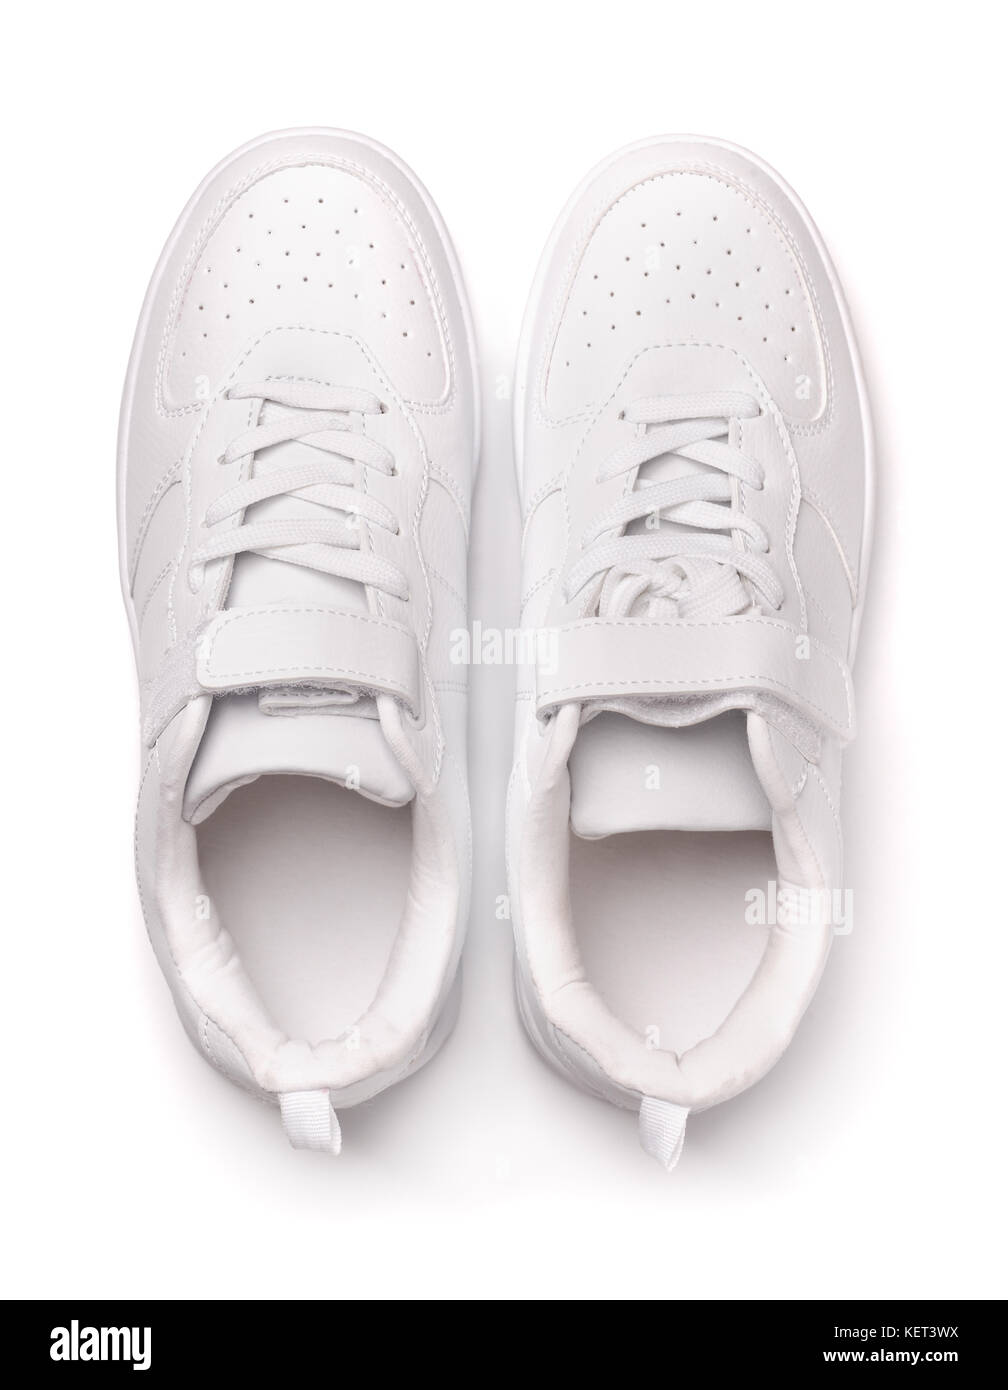 Vue de dessus de chaussures de sport en cuir blanc isolated on white Banque D'Images